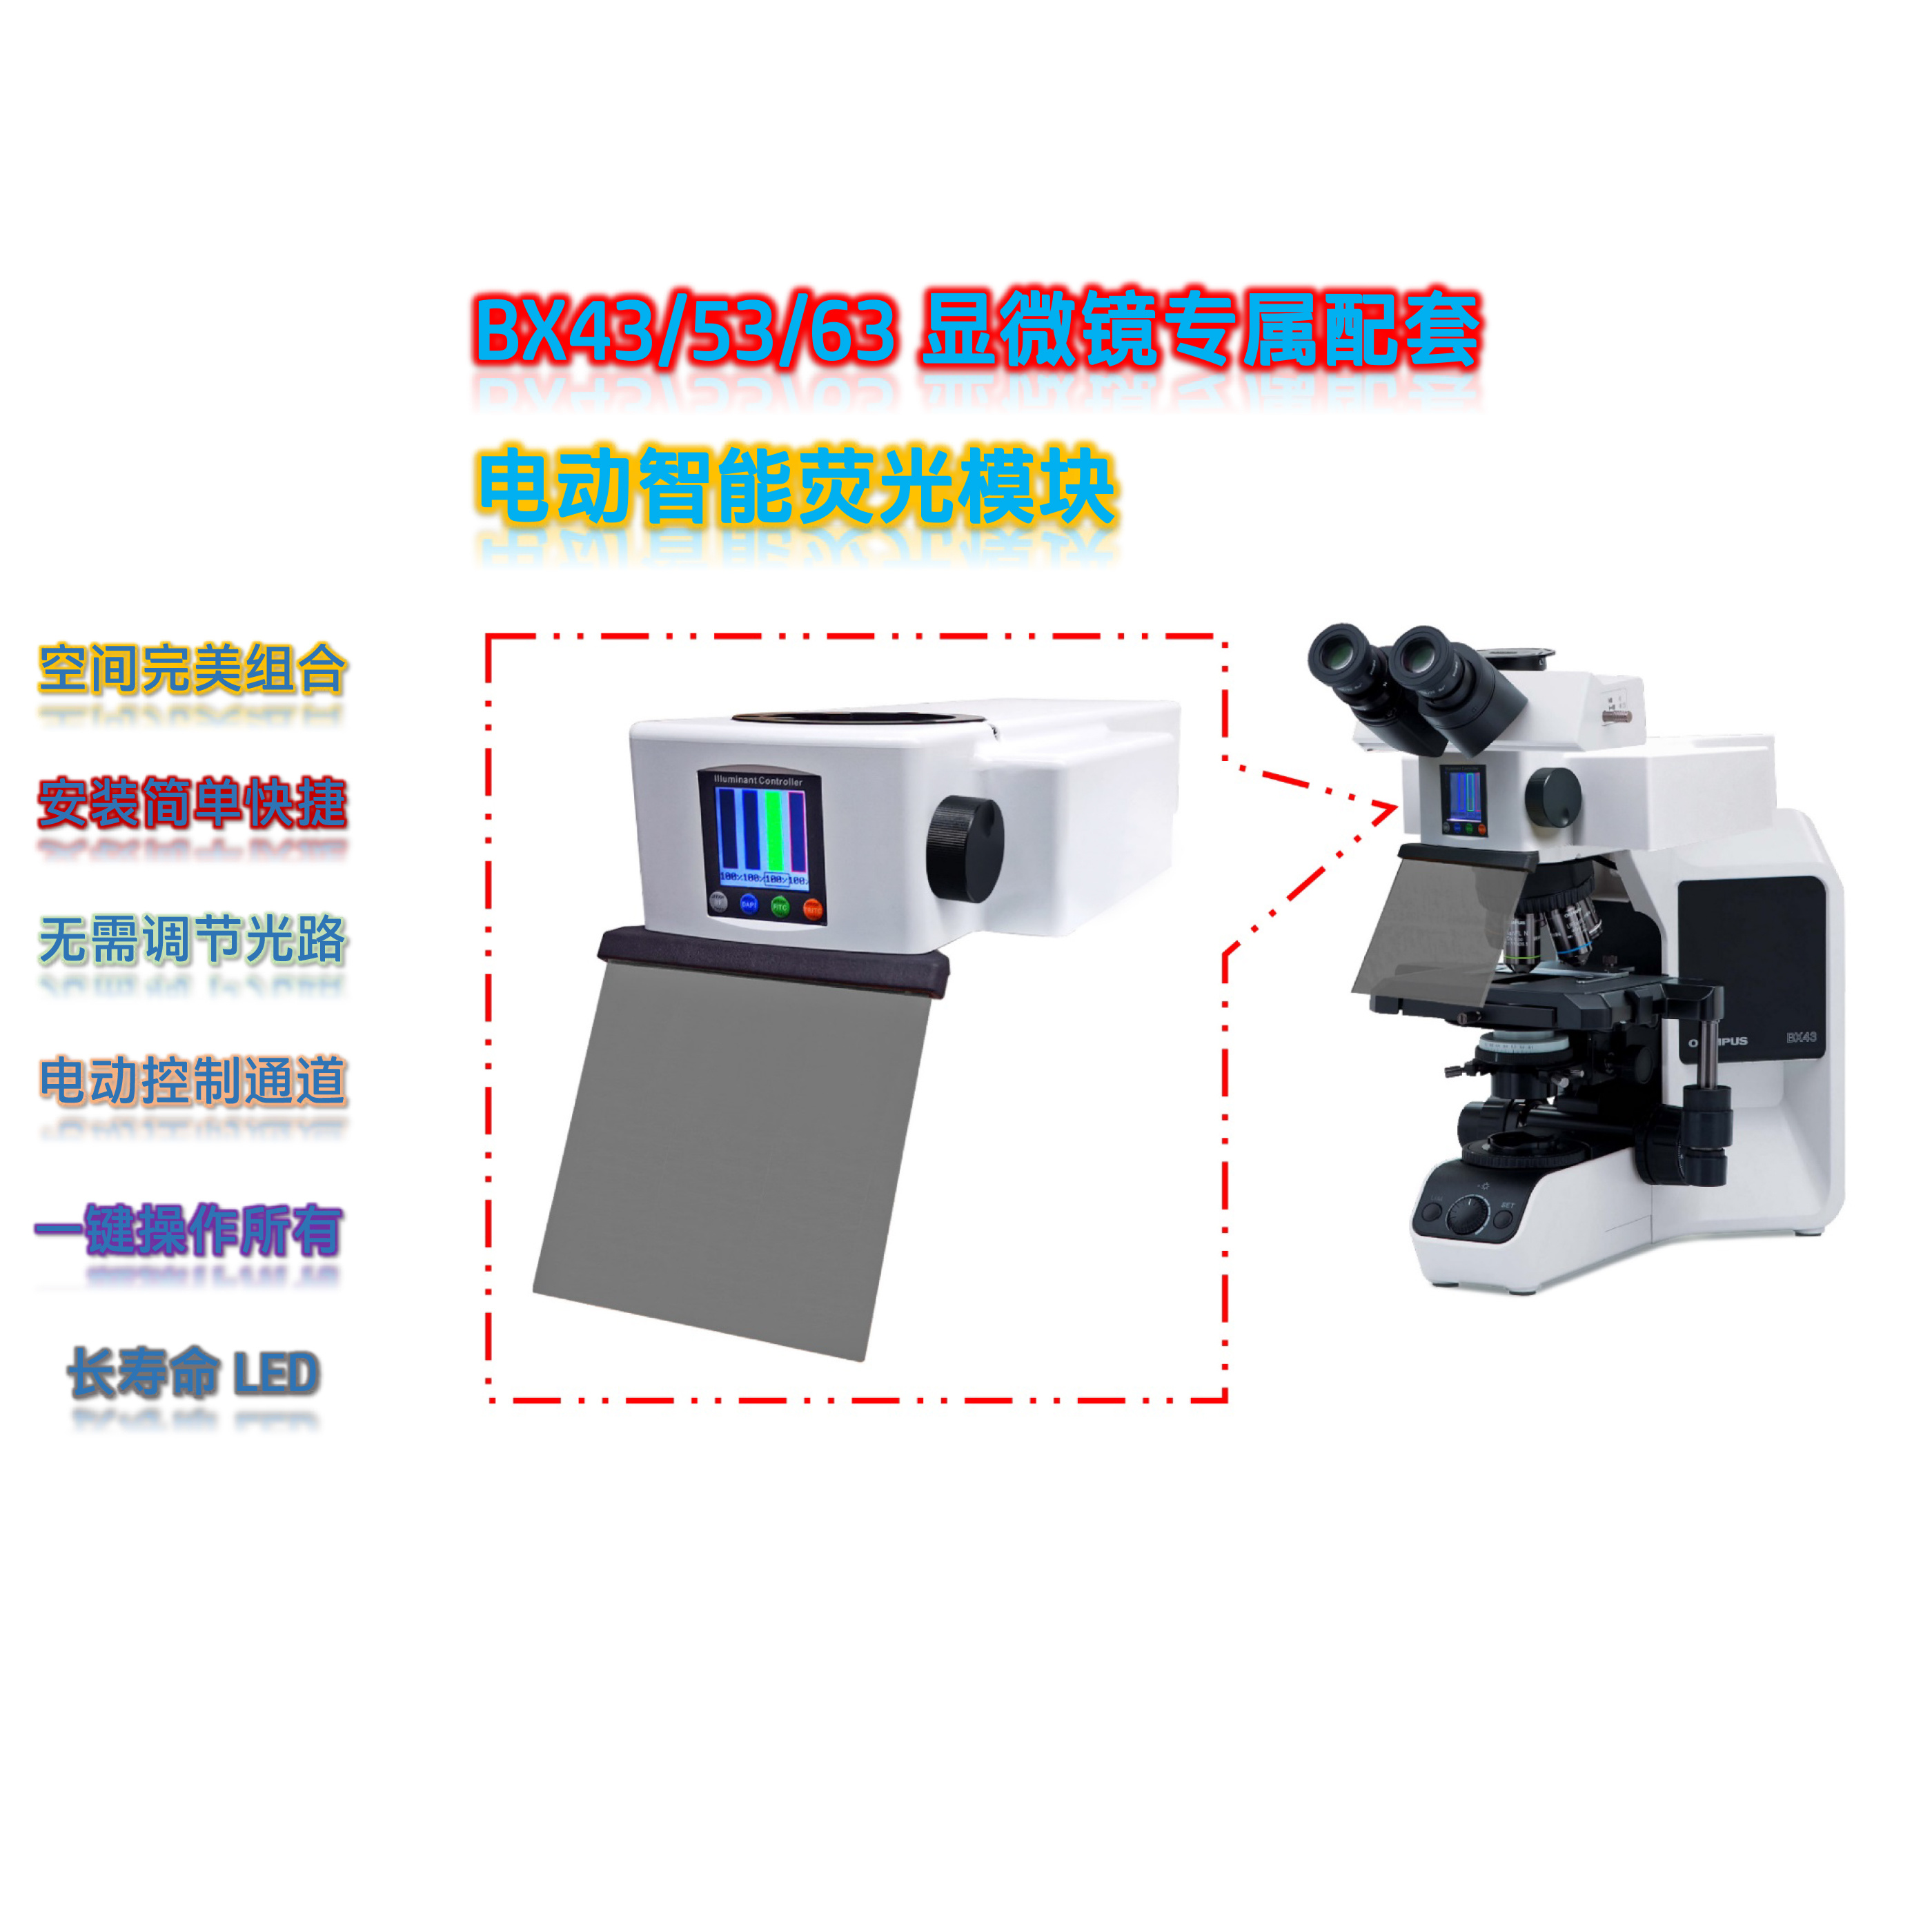 奥林巴斯显微镜BX43/53配套荧光附件正置荧光模块BX-UVG-E